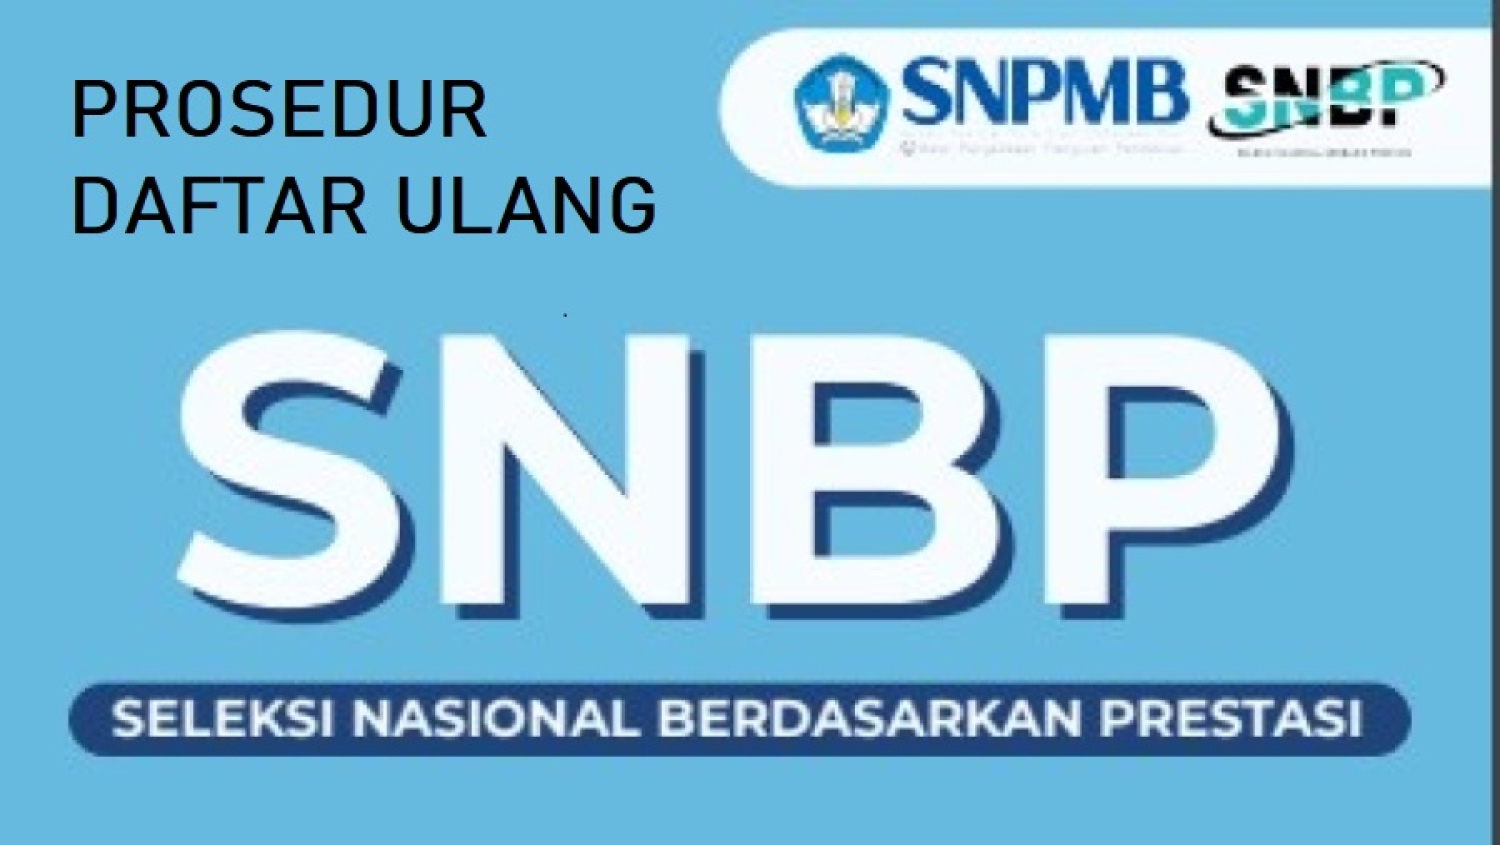 Jangan Hilang! Kartu Pendaftaran SNBP untuk Daftar Ulang, Ini Cara Cetaknya